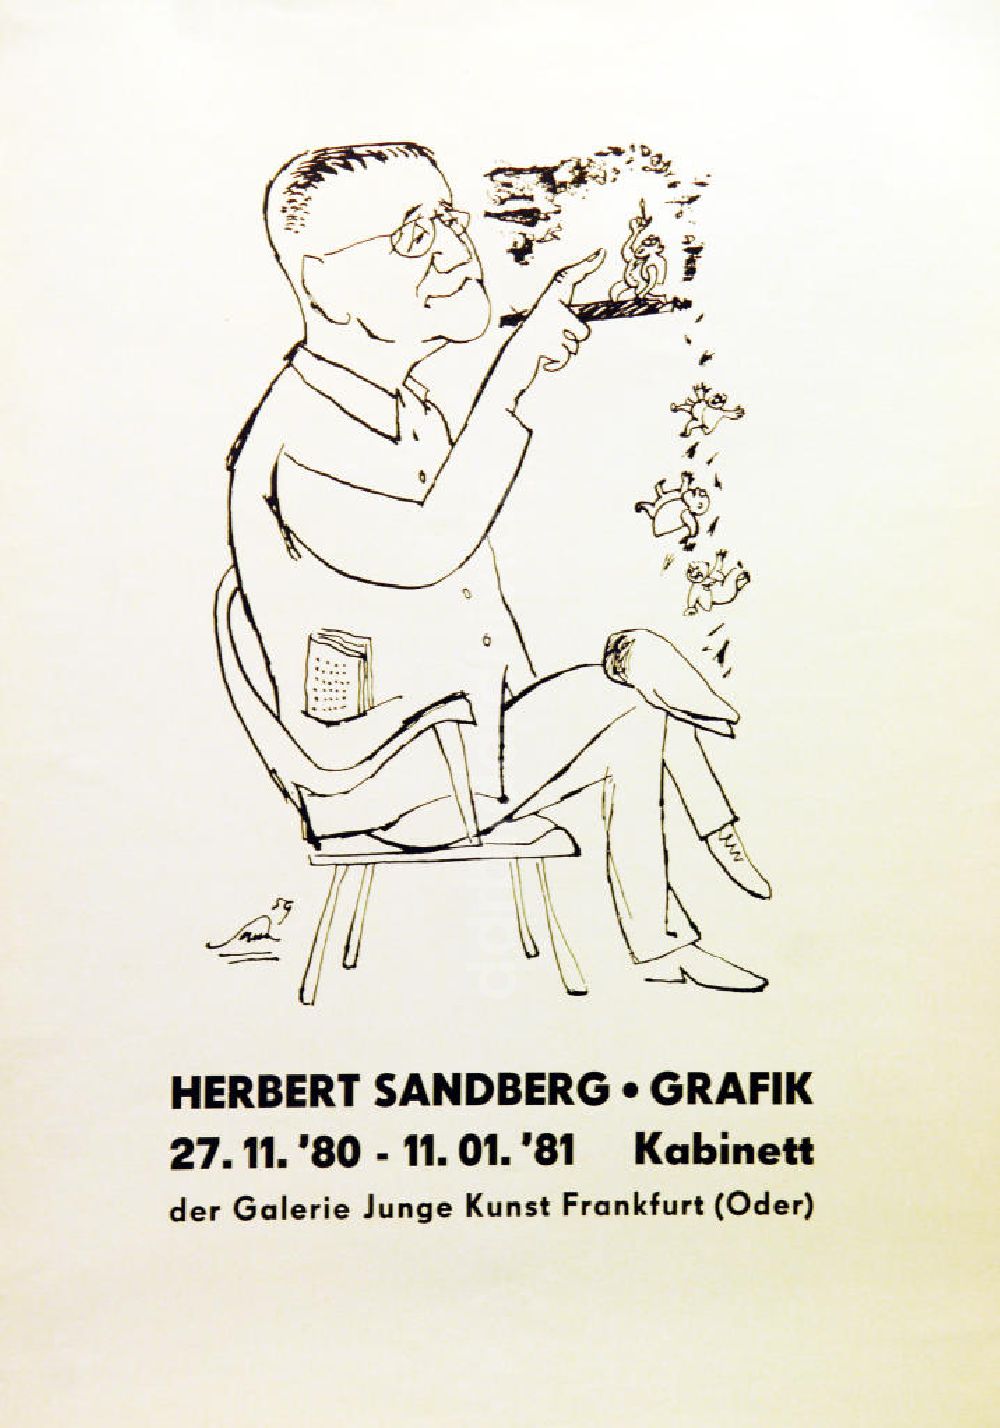 DDR-Bildarchiv: Berlin - Plakat von der Ausstellung Herbert Sandberg Grafik aus dem Jahr 1980